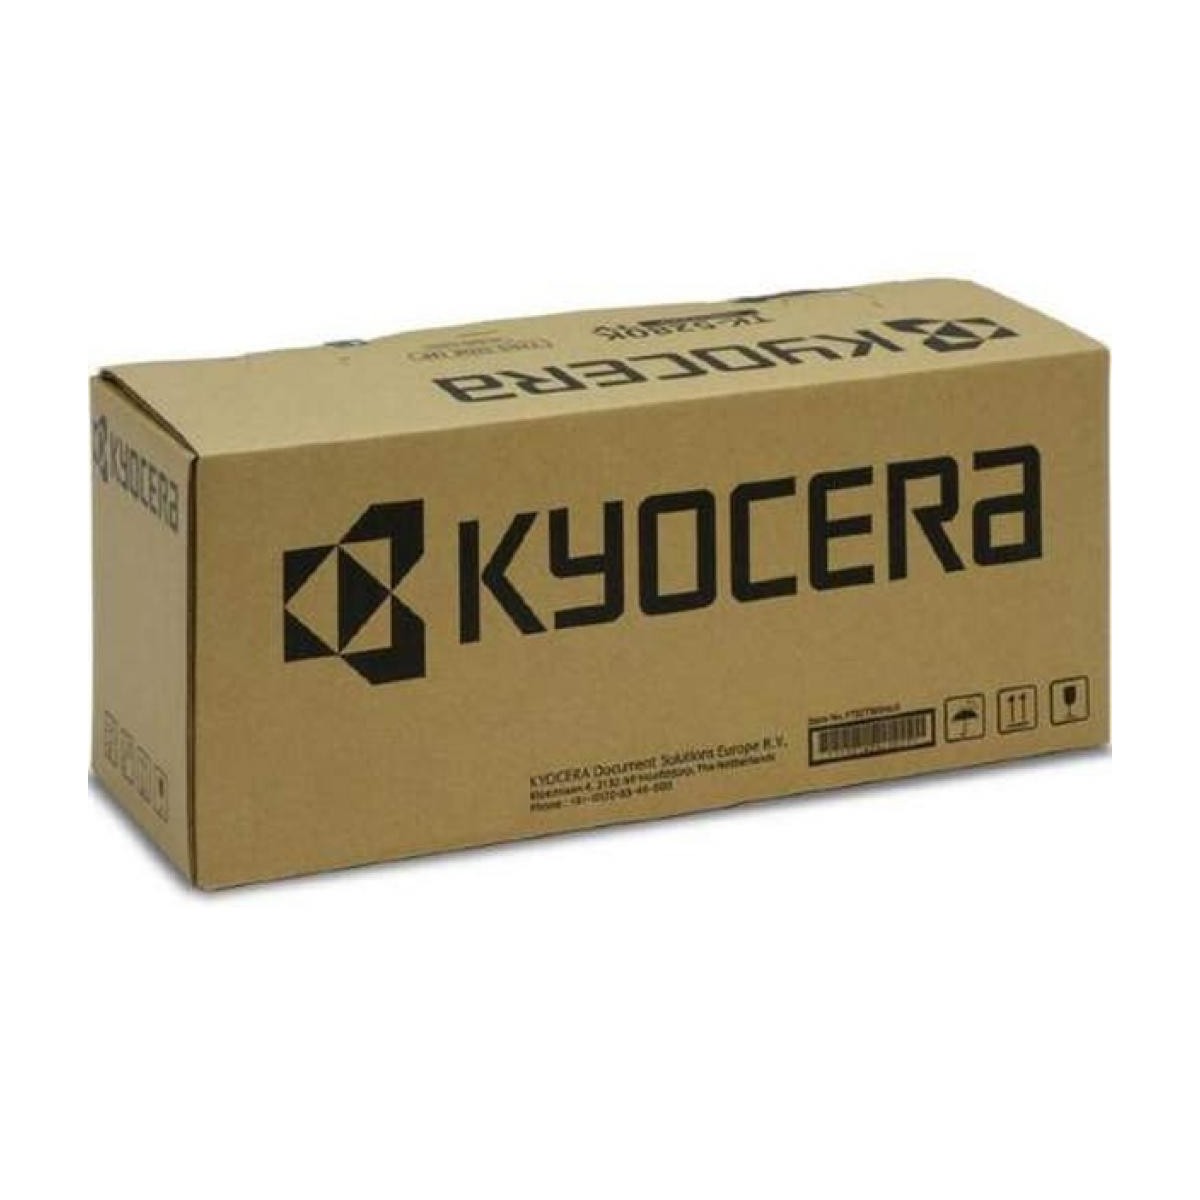 Kyocera Developer Unit DV-896Y